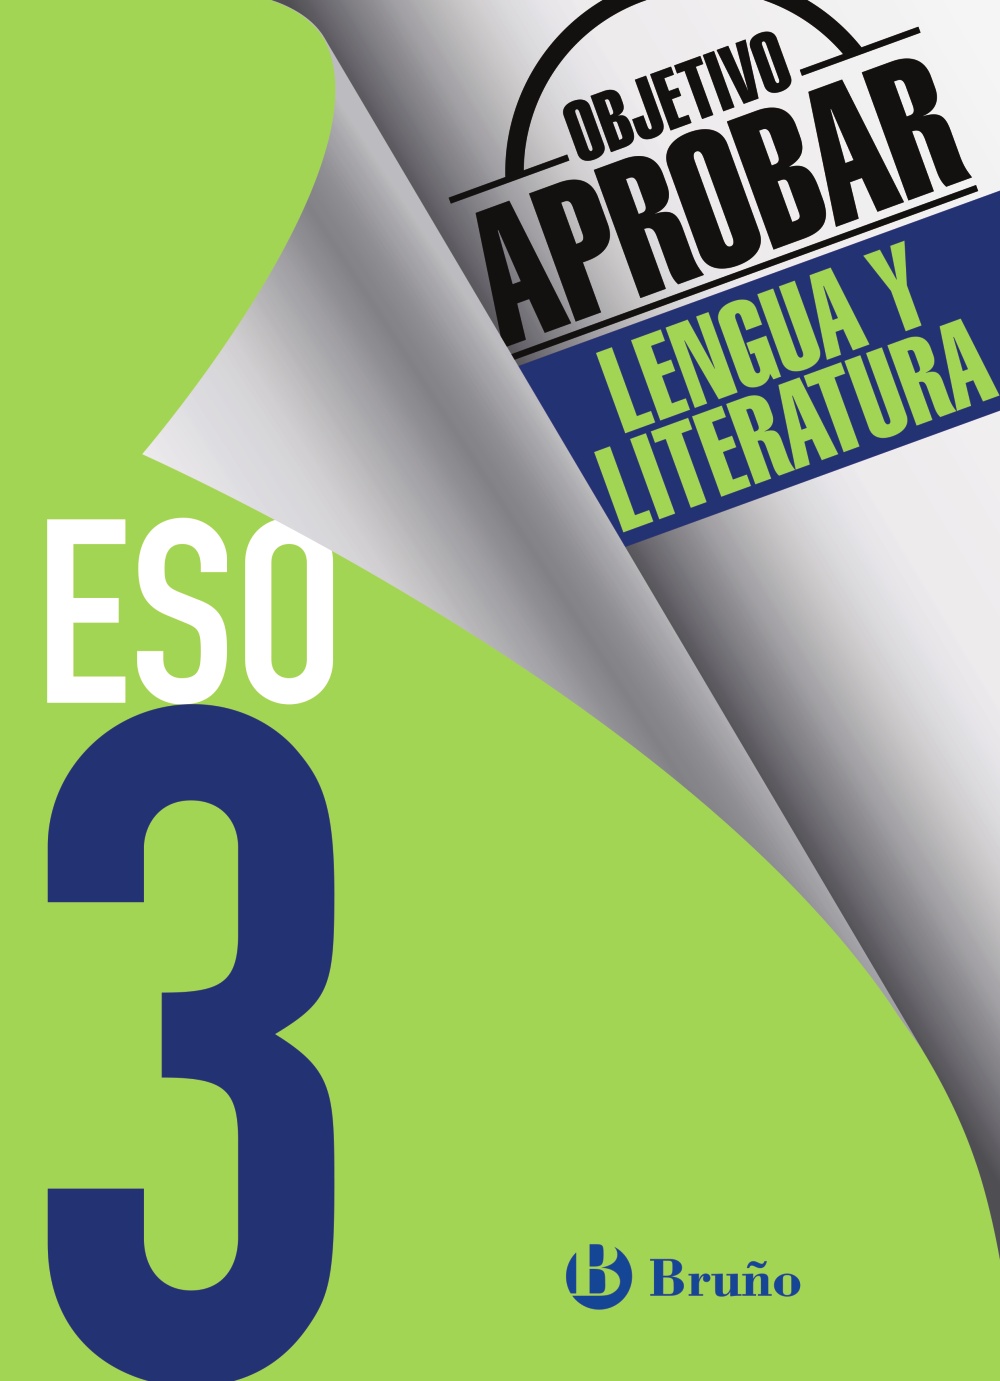 Solucionario Objetivo Aprobar Lengua y Literatura 3 ESO Bruño-pdf